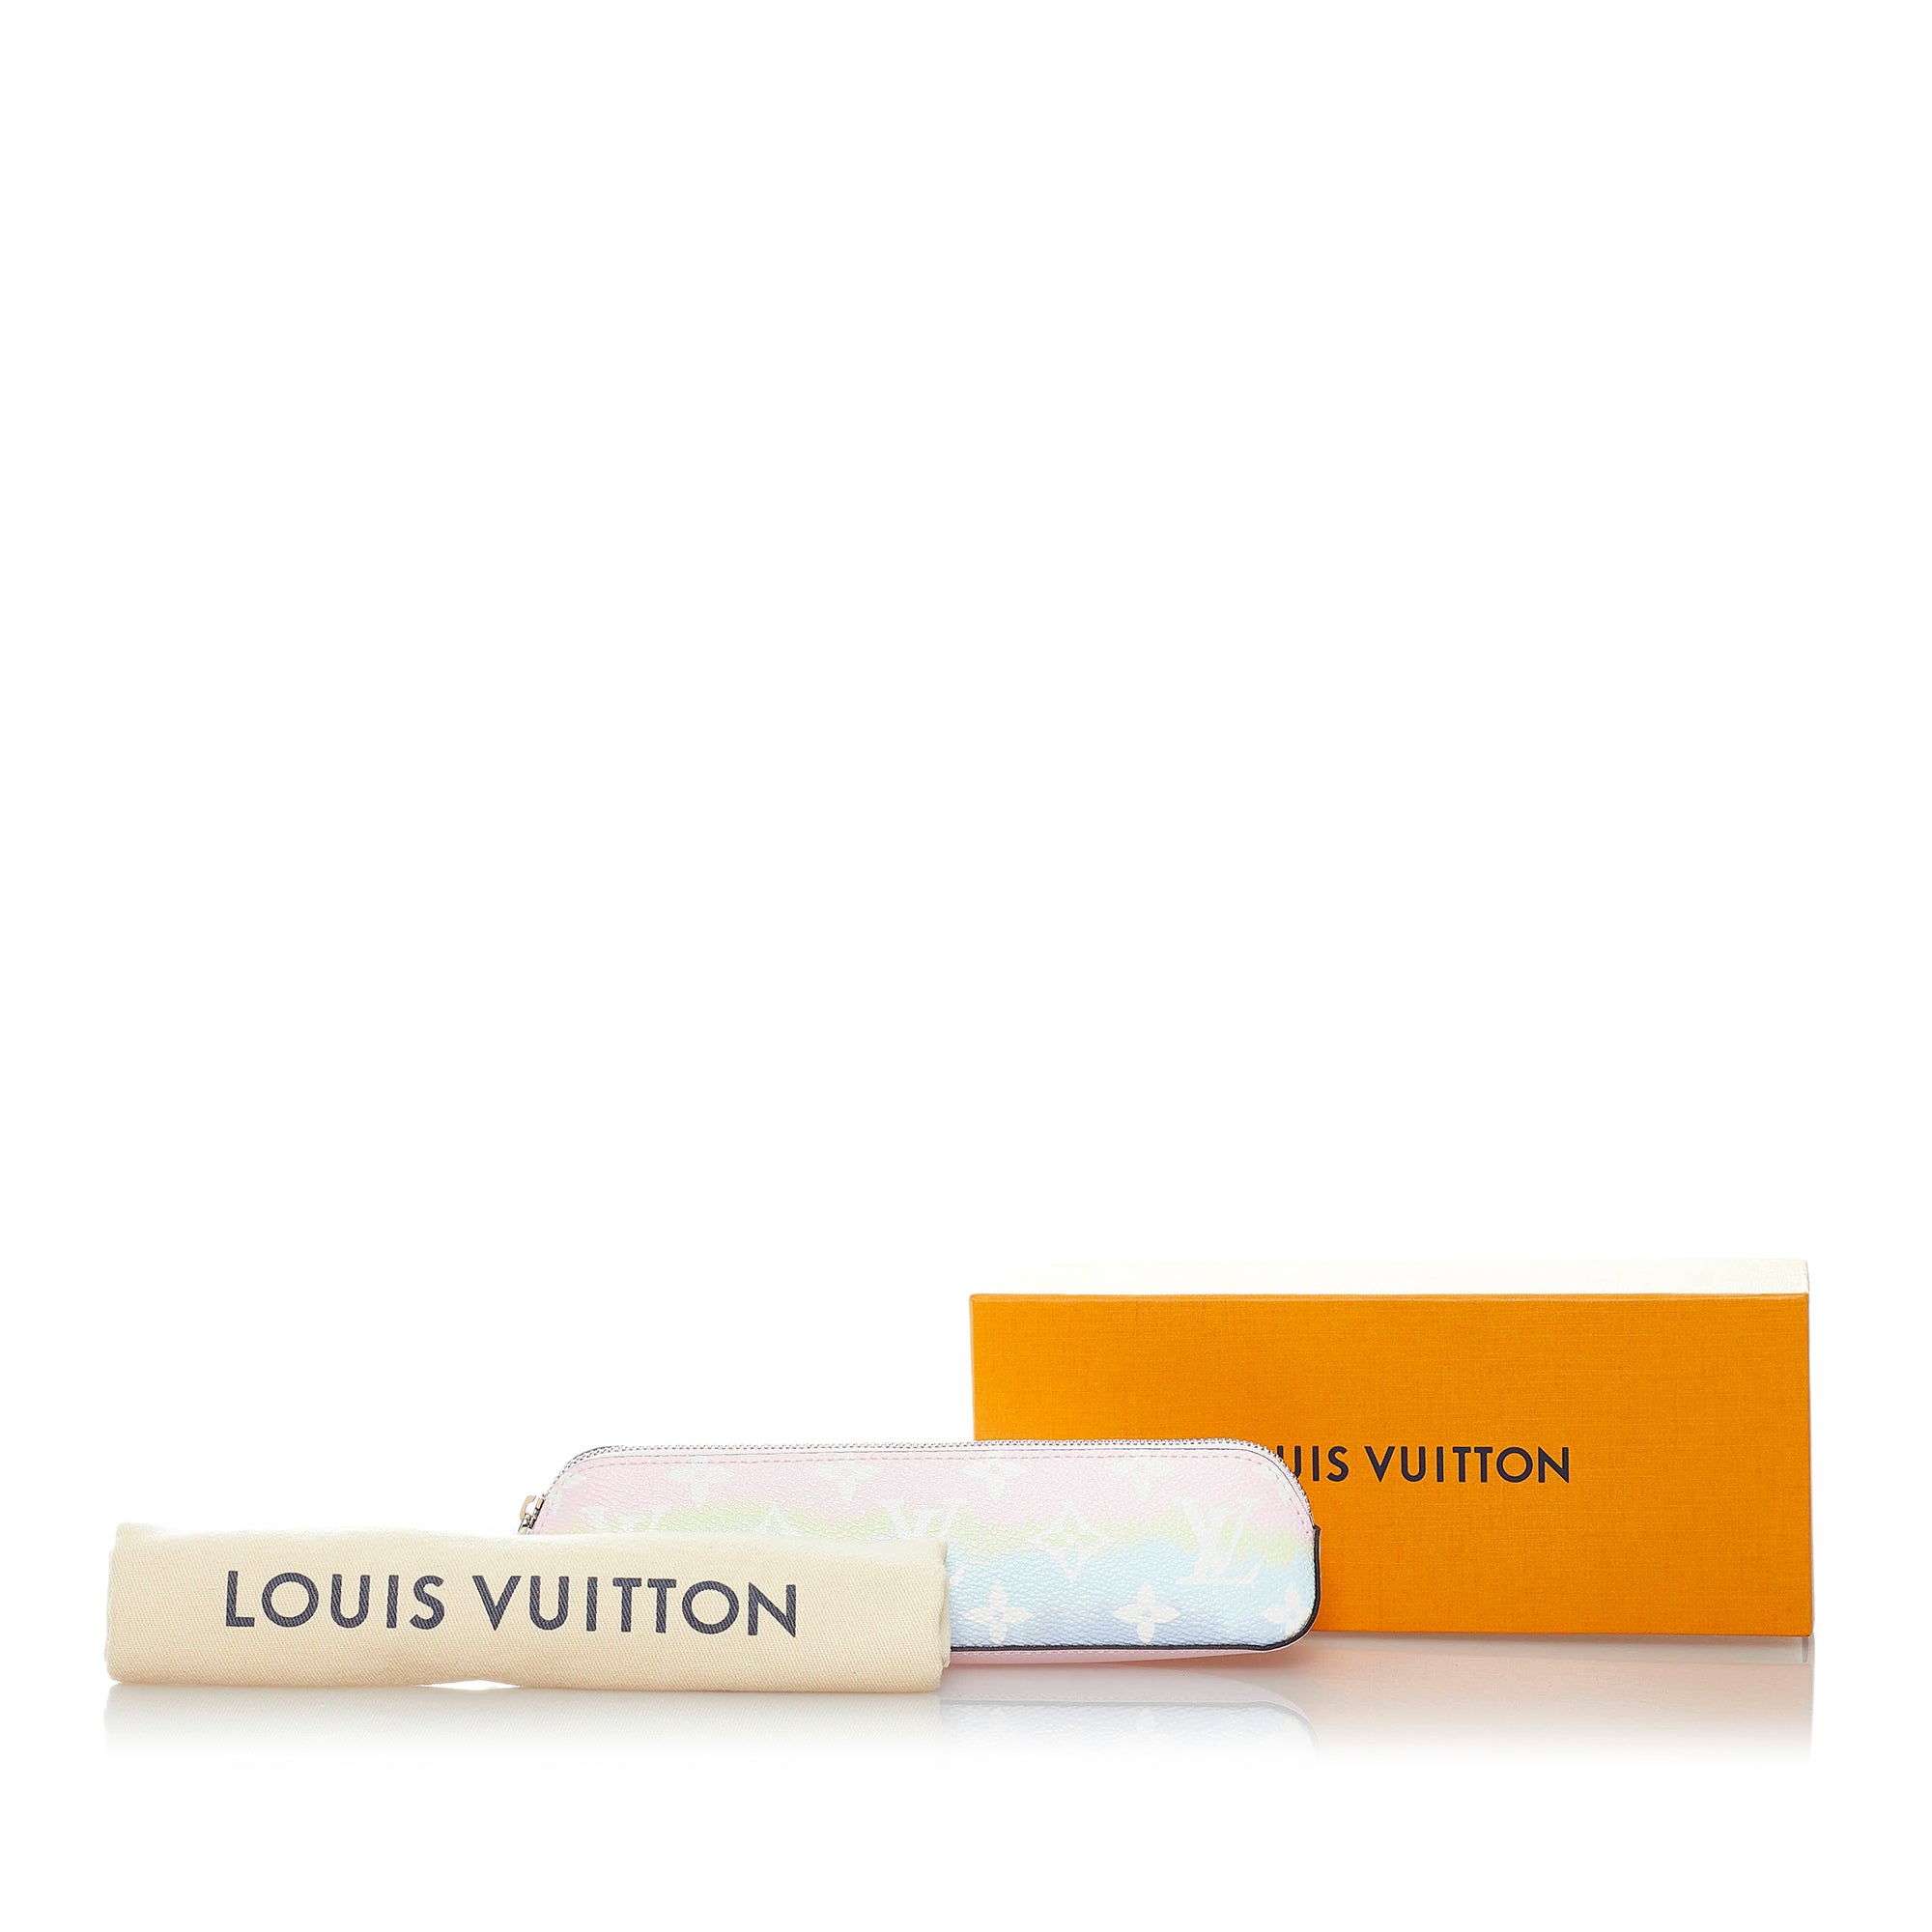 Louis Vuitton Colored Pencils Case